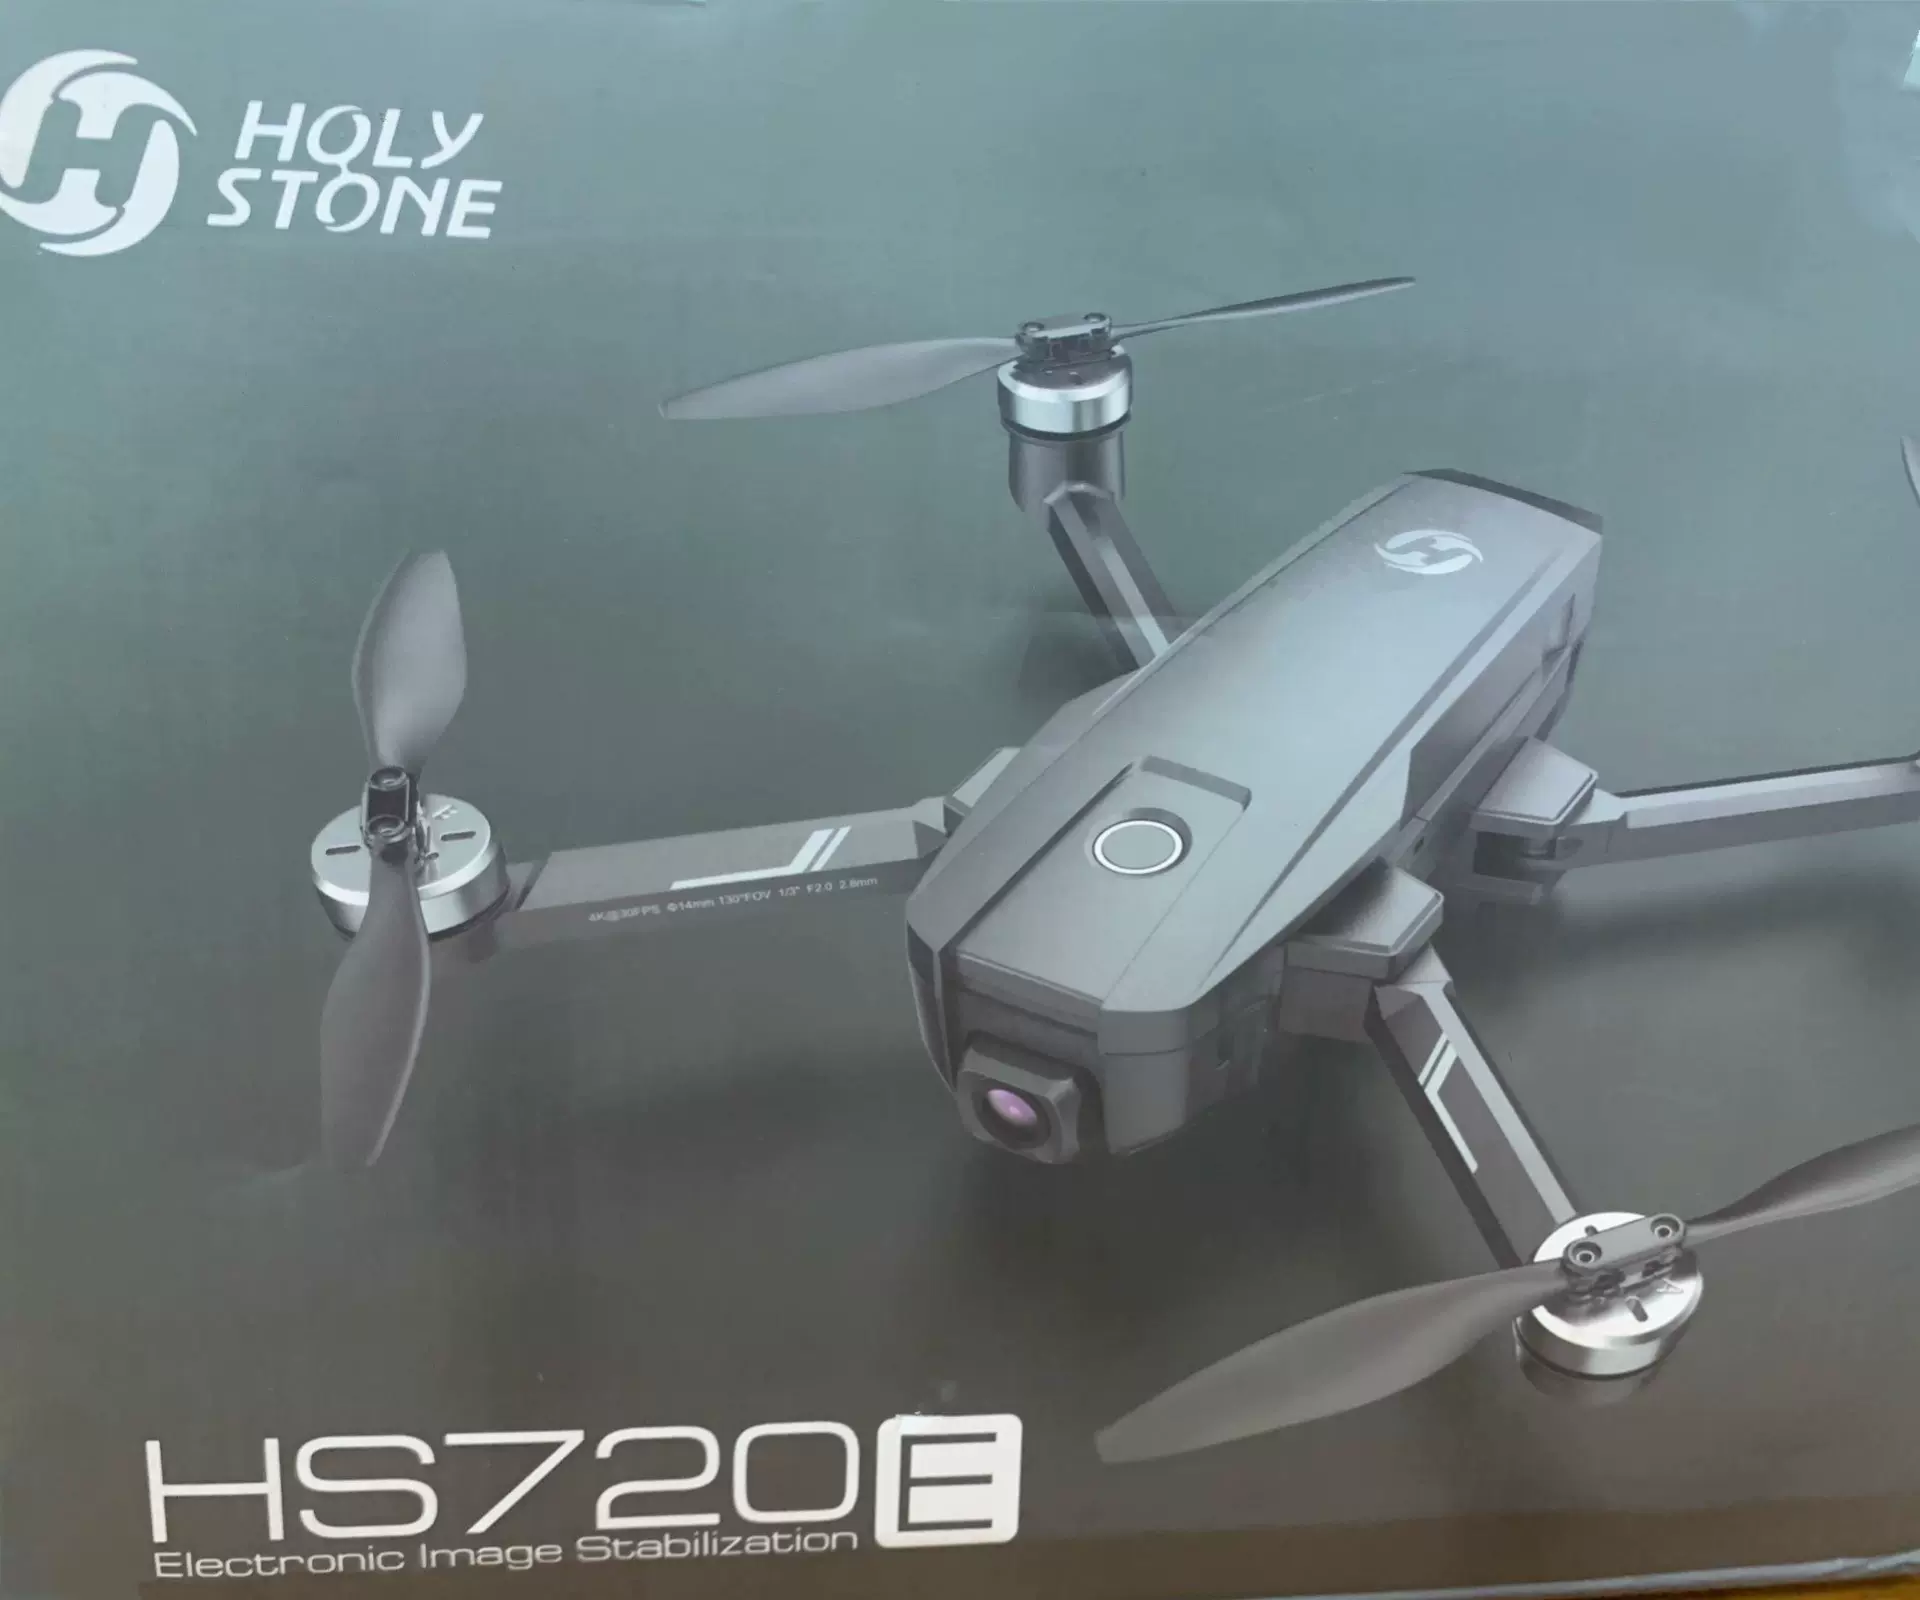 議價)全新HolyStonE活石hs720E無人機，升級4K鏡頭帶-Taobao